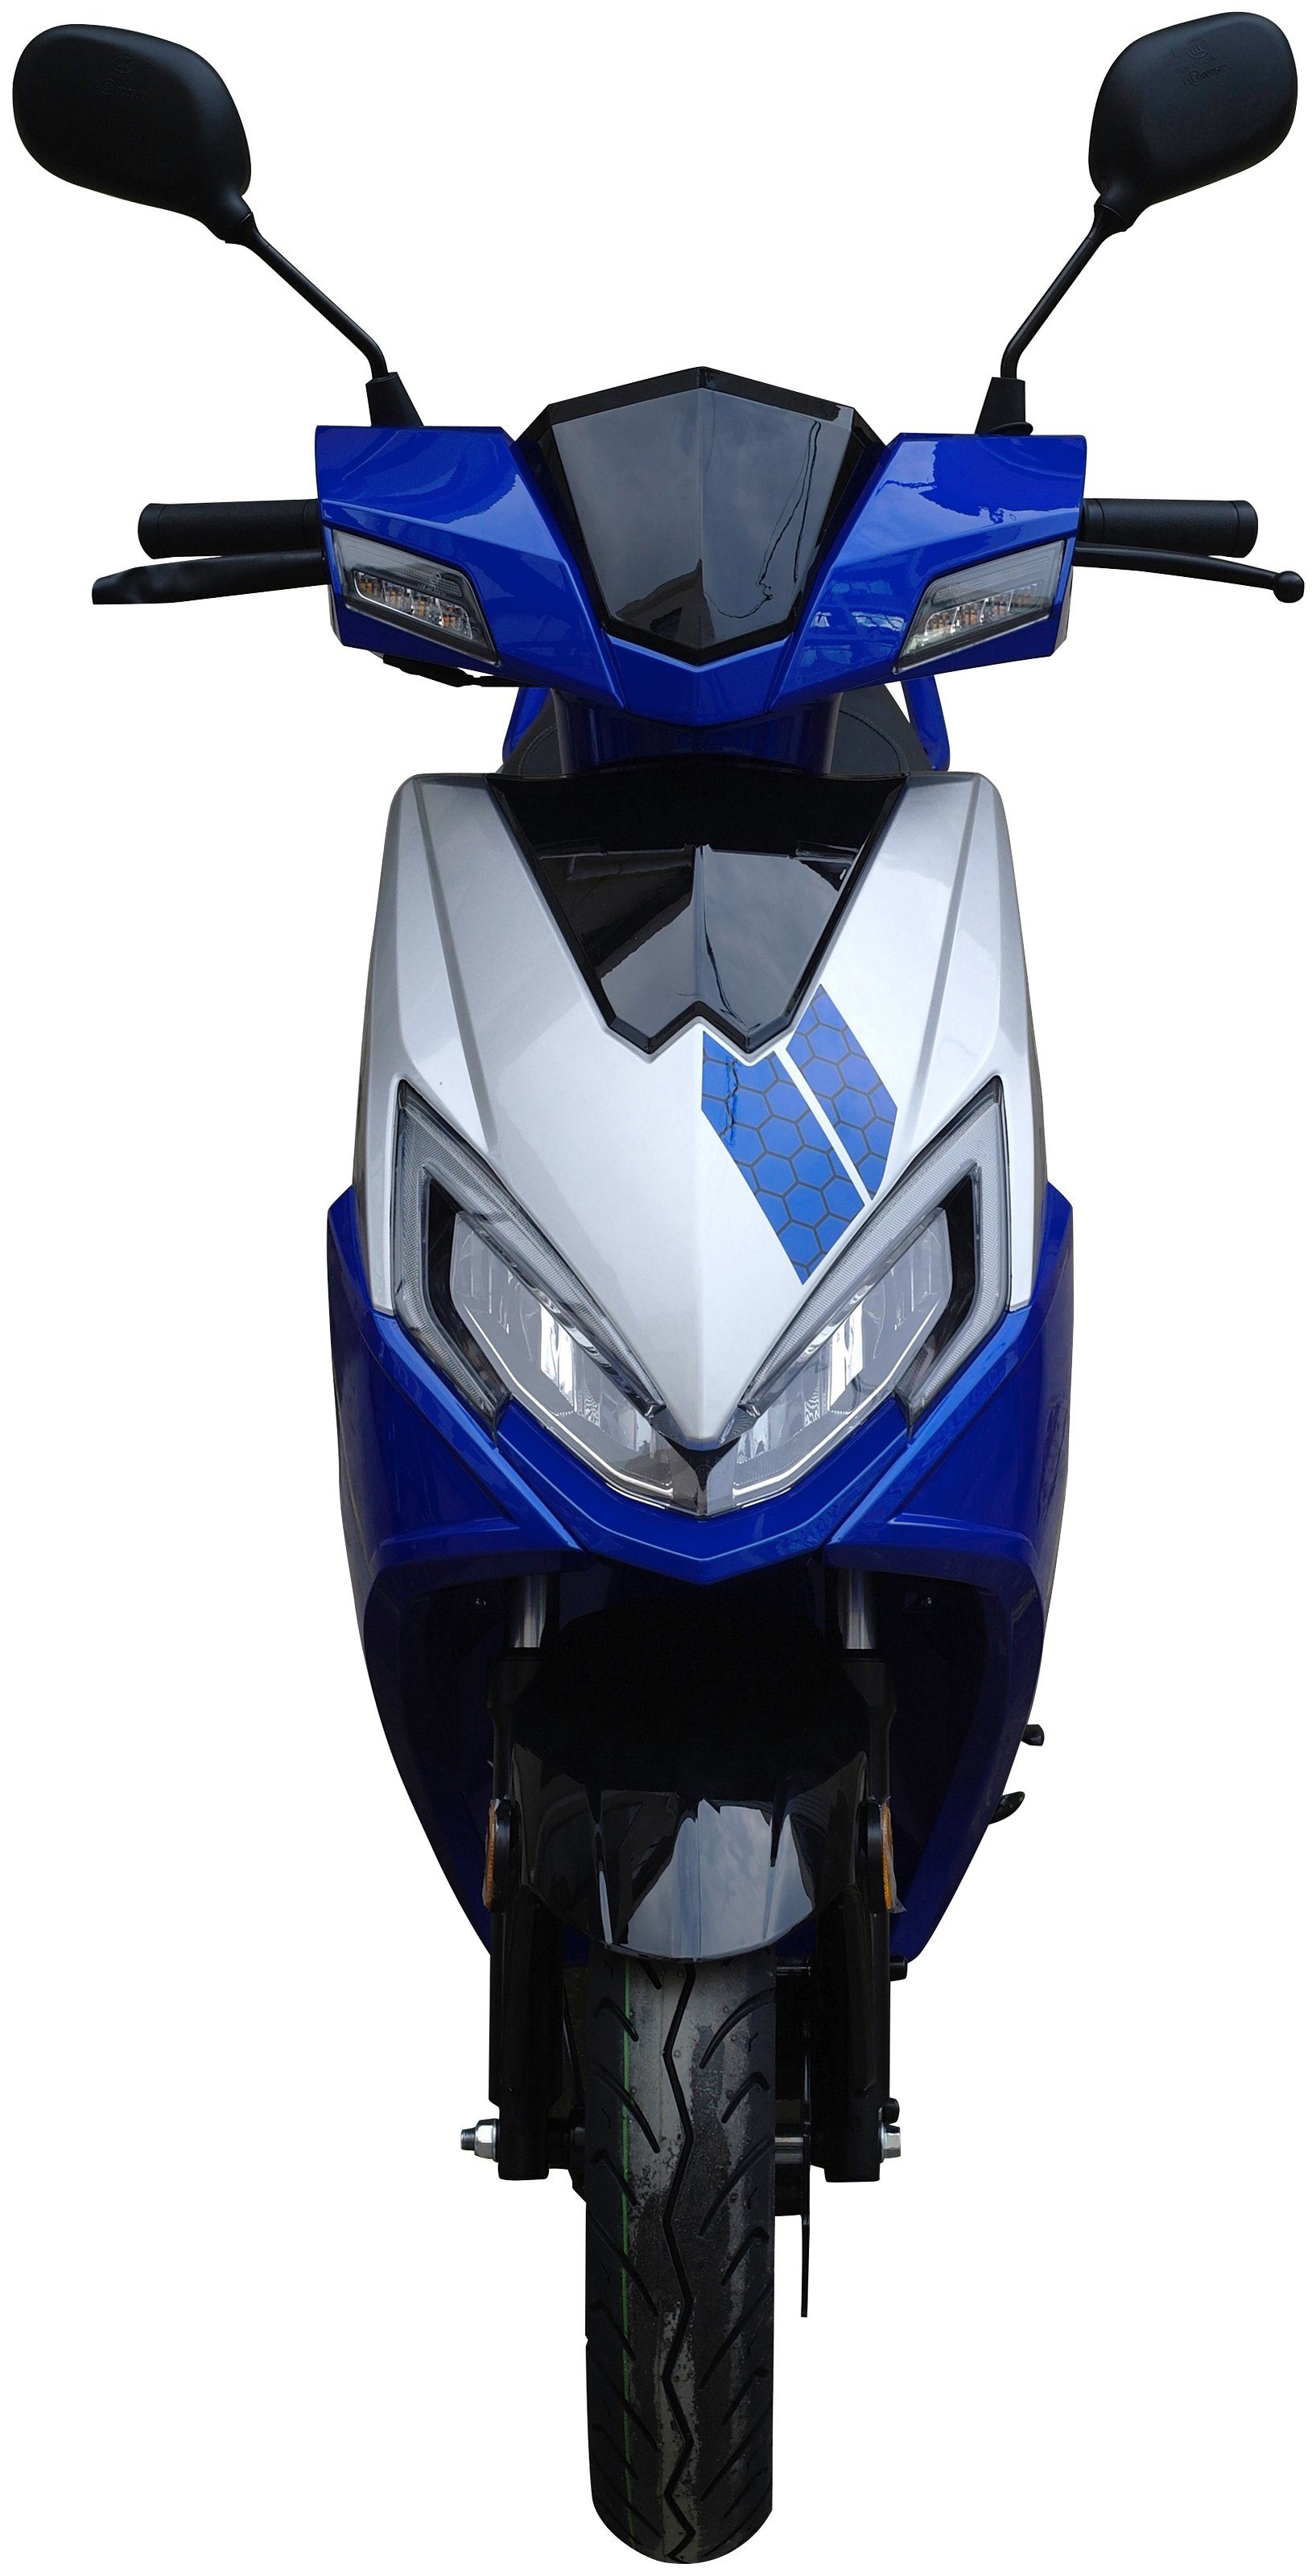 50 UNION 45 blau km/h, Sonic Euro X 50-45, Motorroller ccm, 5 GT